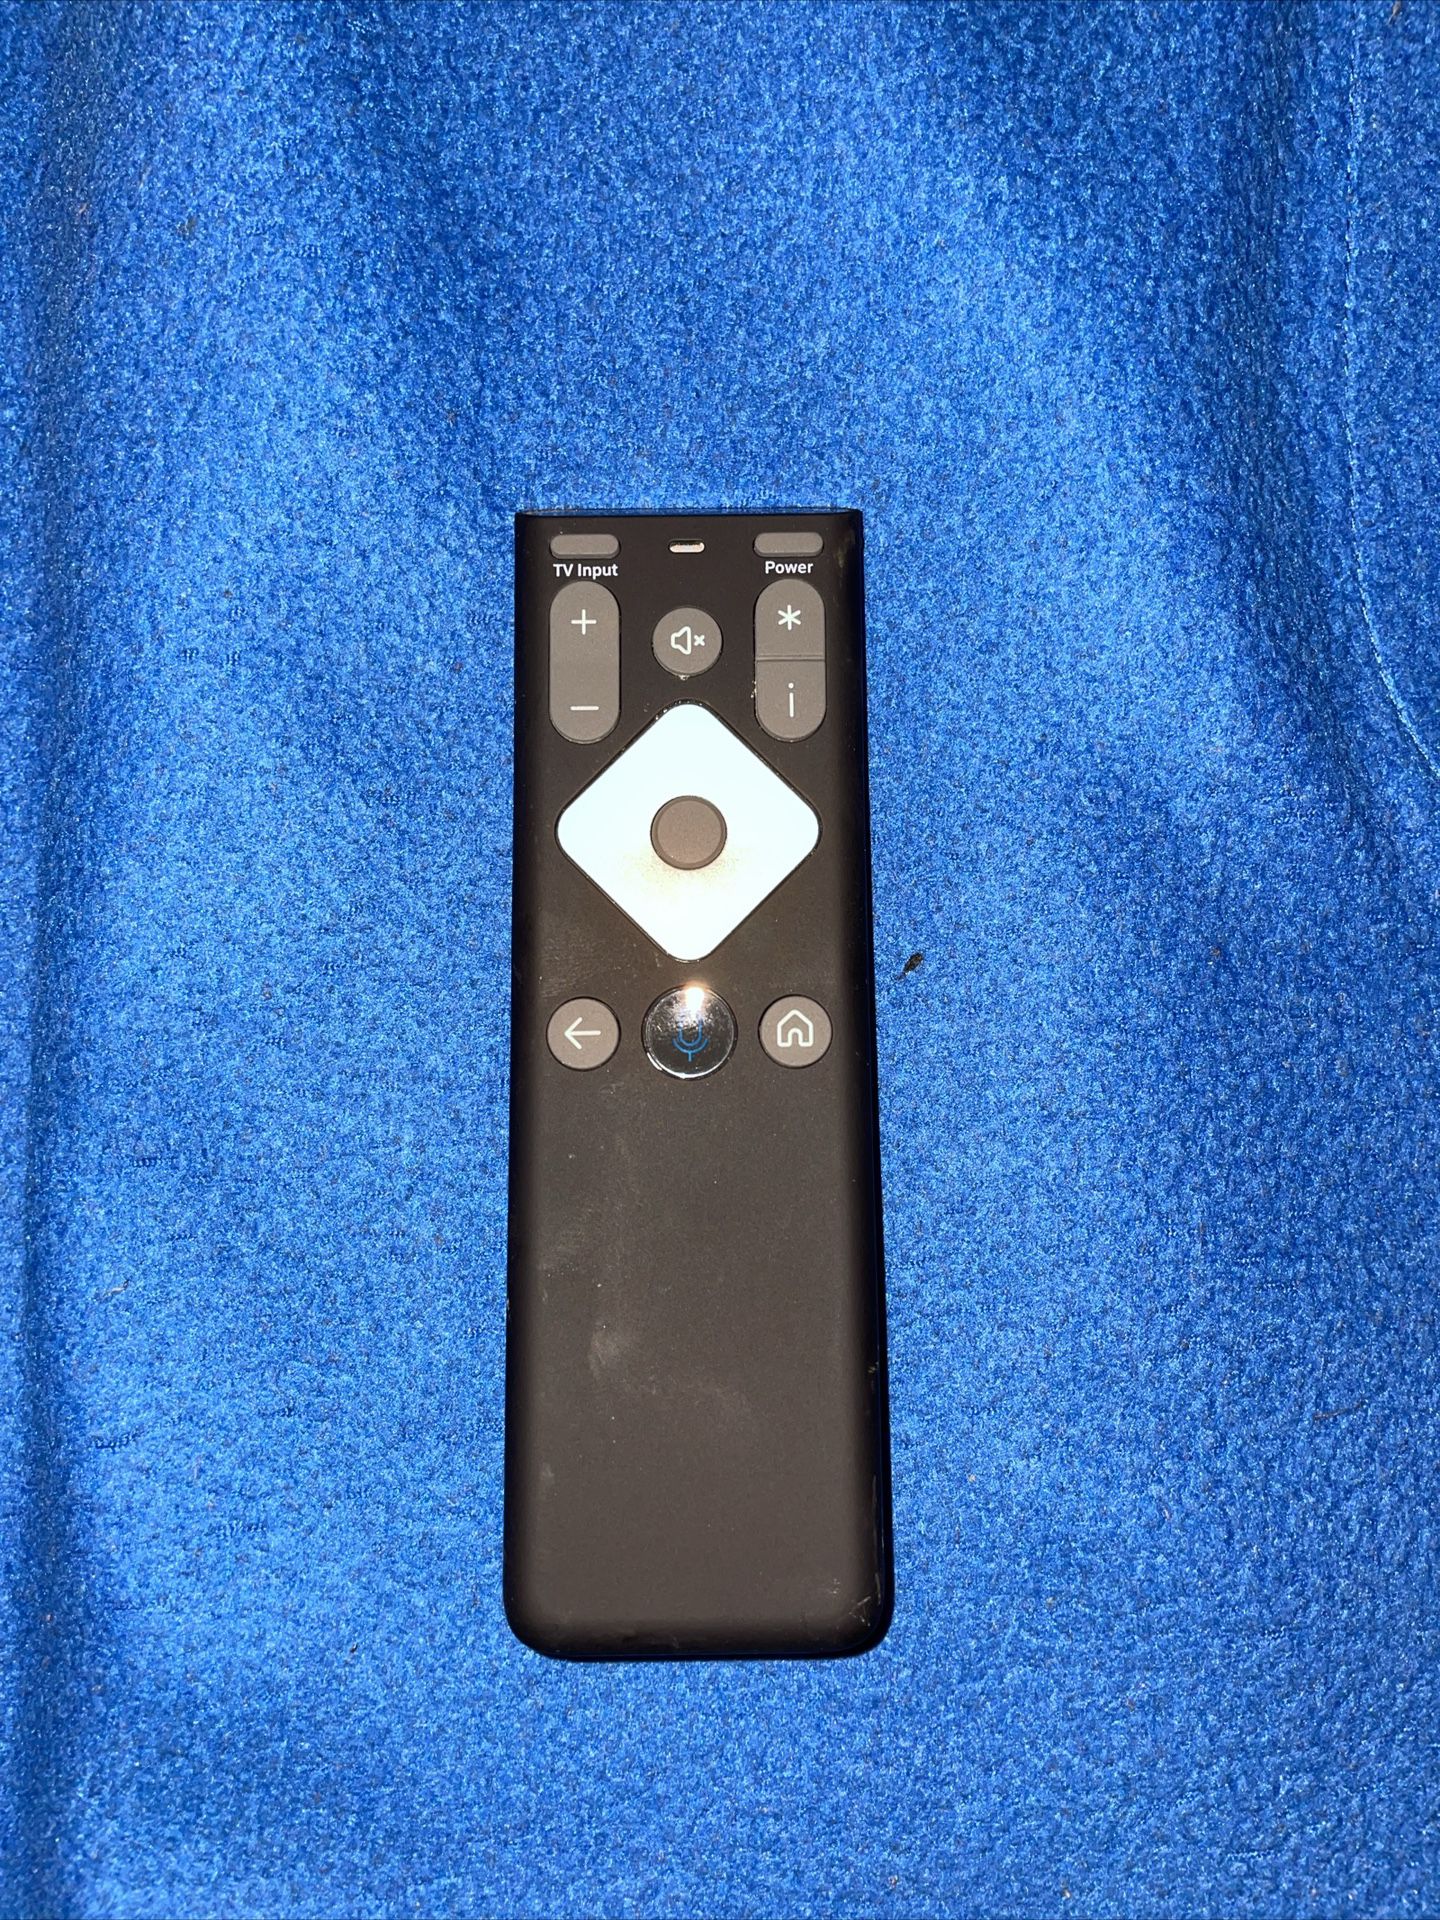 XFINITY XR16 Wireless Voice Remote Control - Black